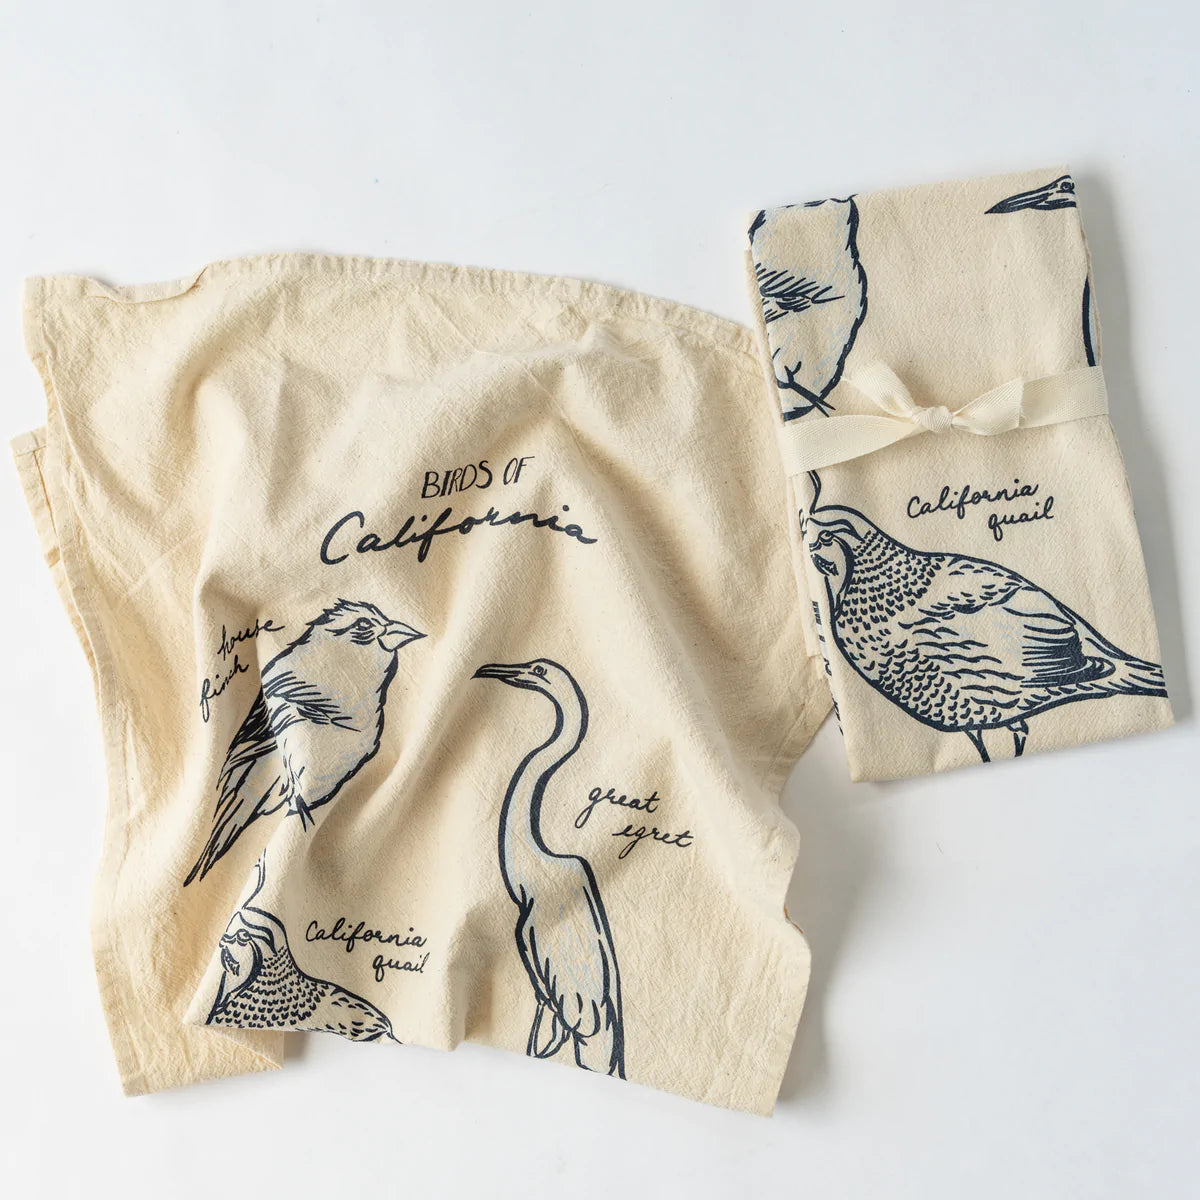 California bird sketches on flour sack kitchen towel tied with bow